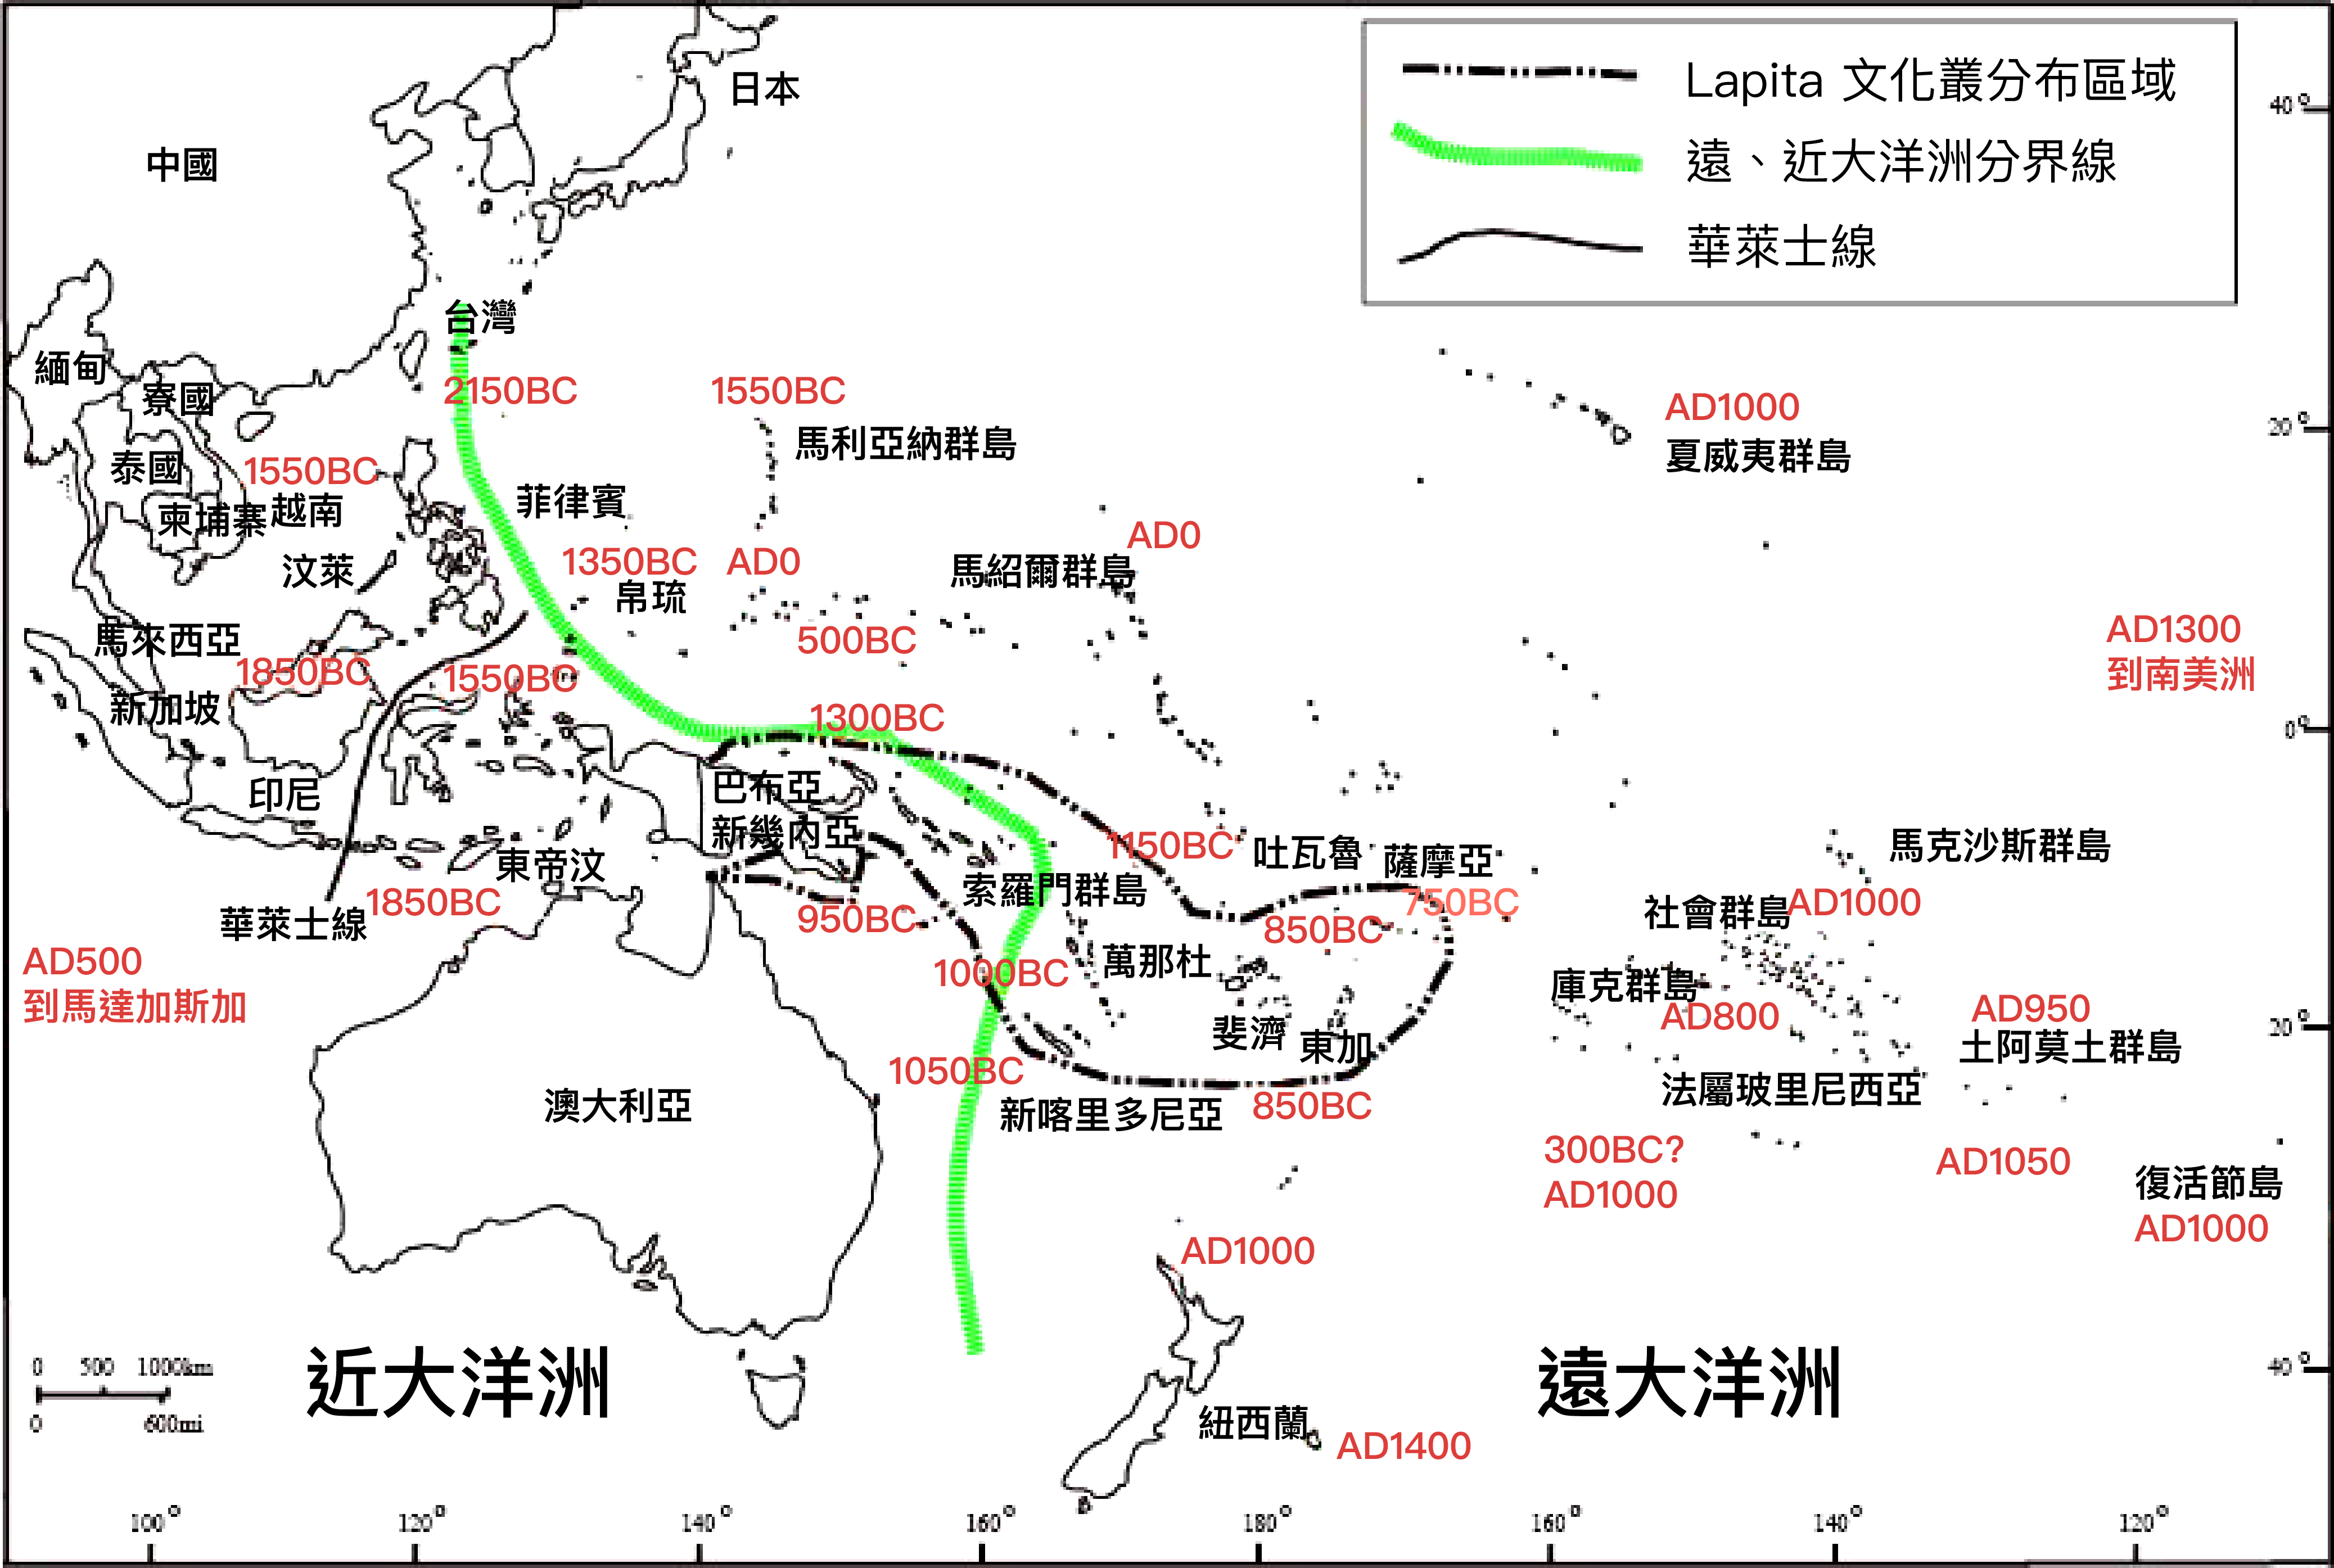 紅色時間點，表示南島語族遷徙至此處的年代。虛線區域，呈現 Lapita 文化叢分布區。 圖片來源│邱斯嘉提供